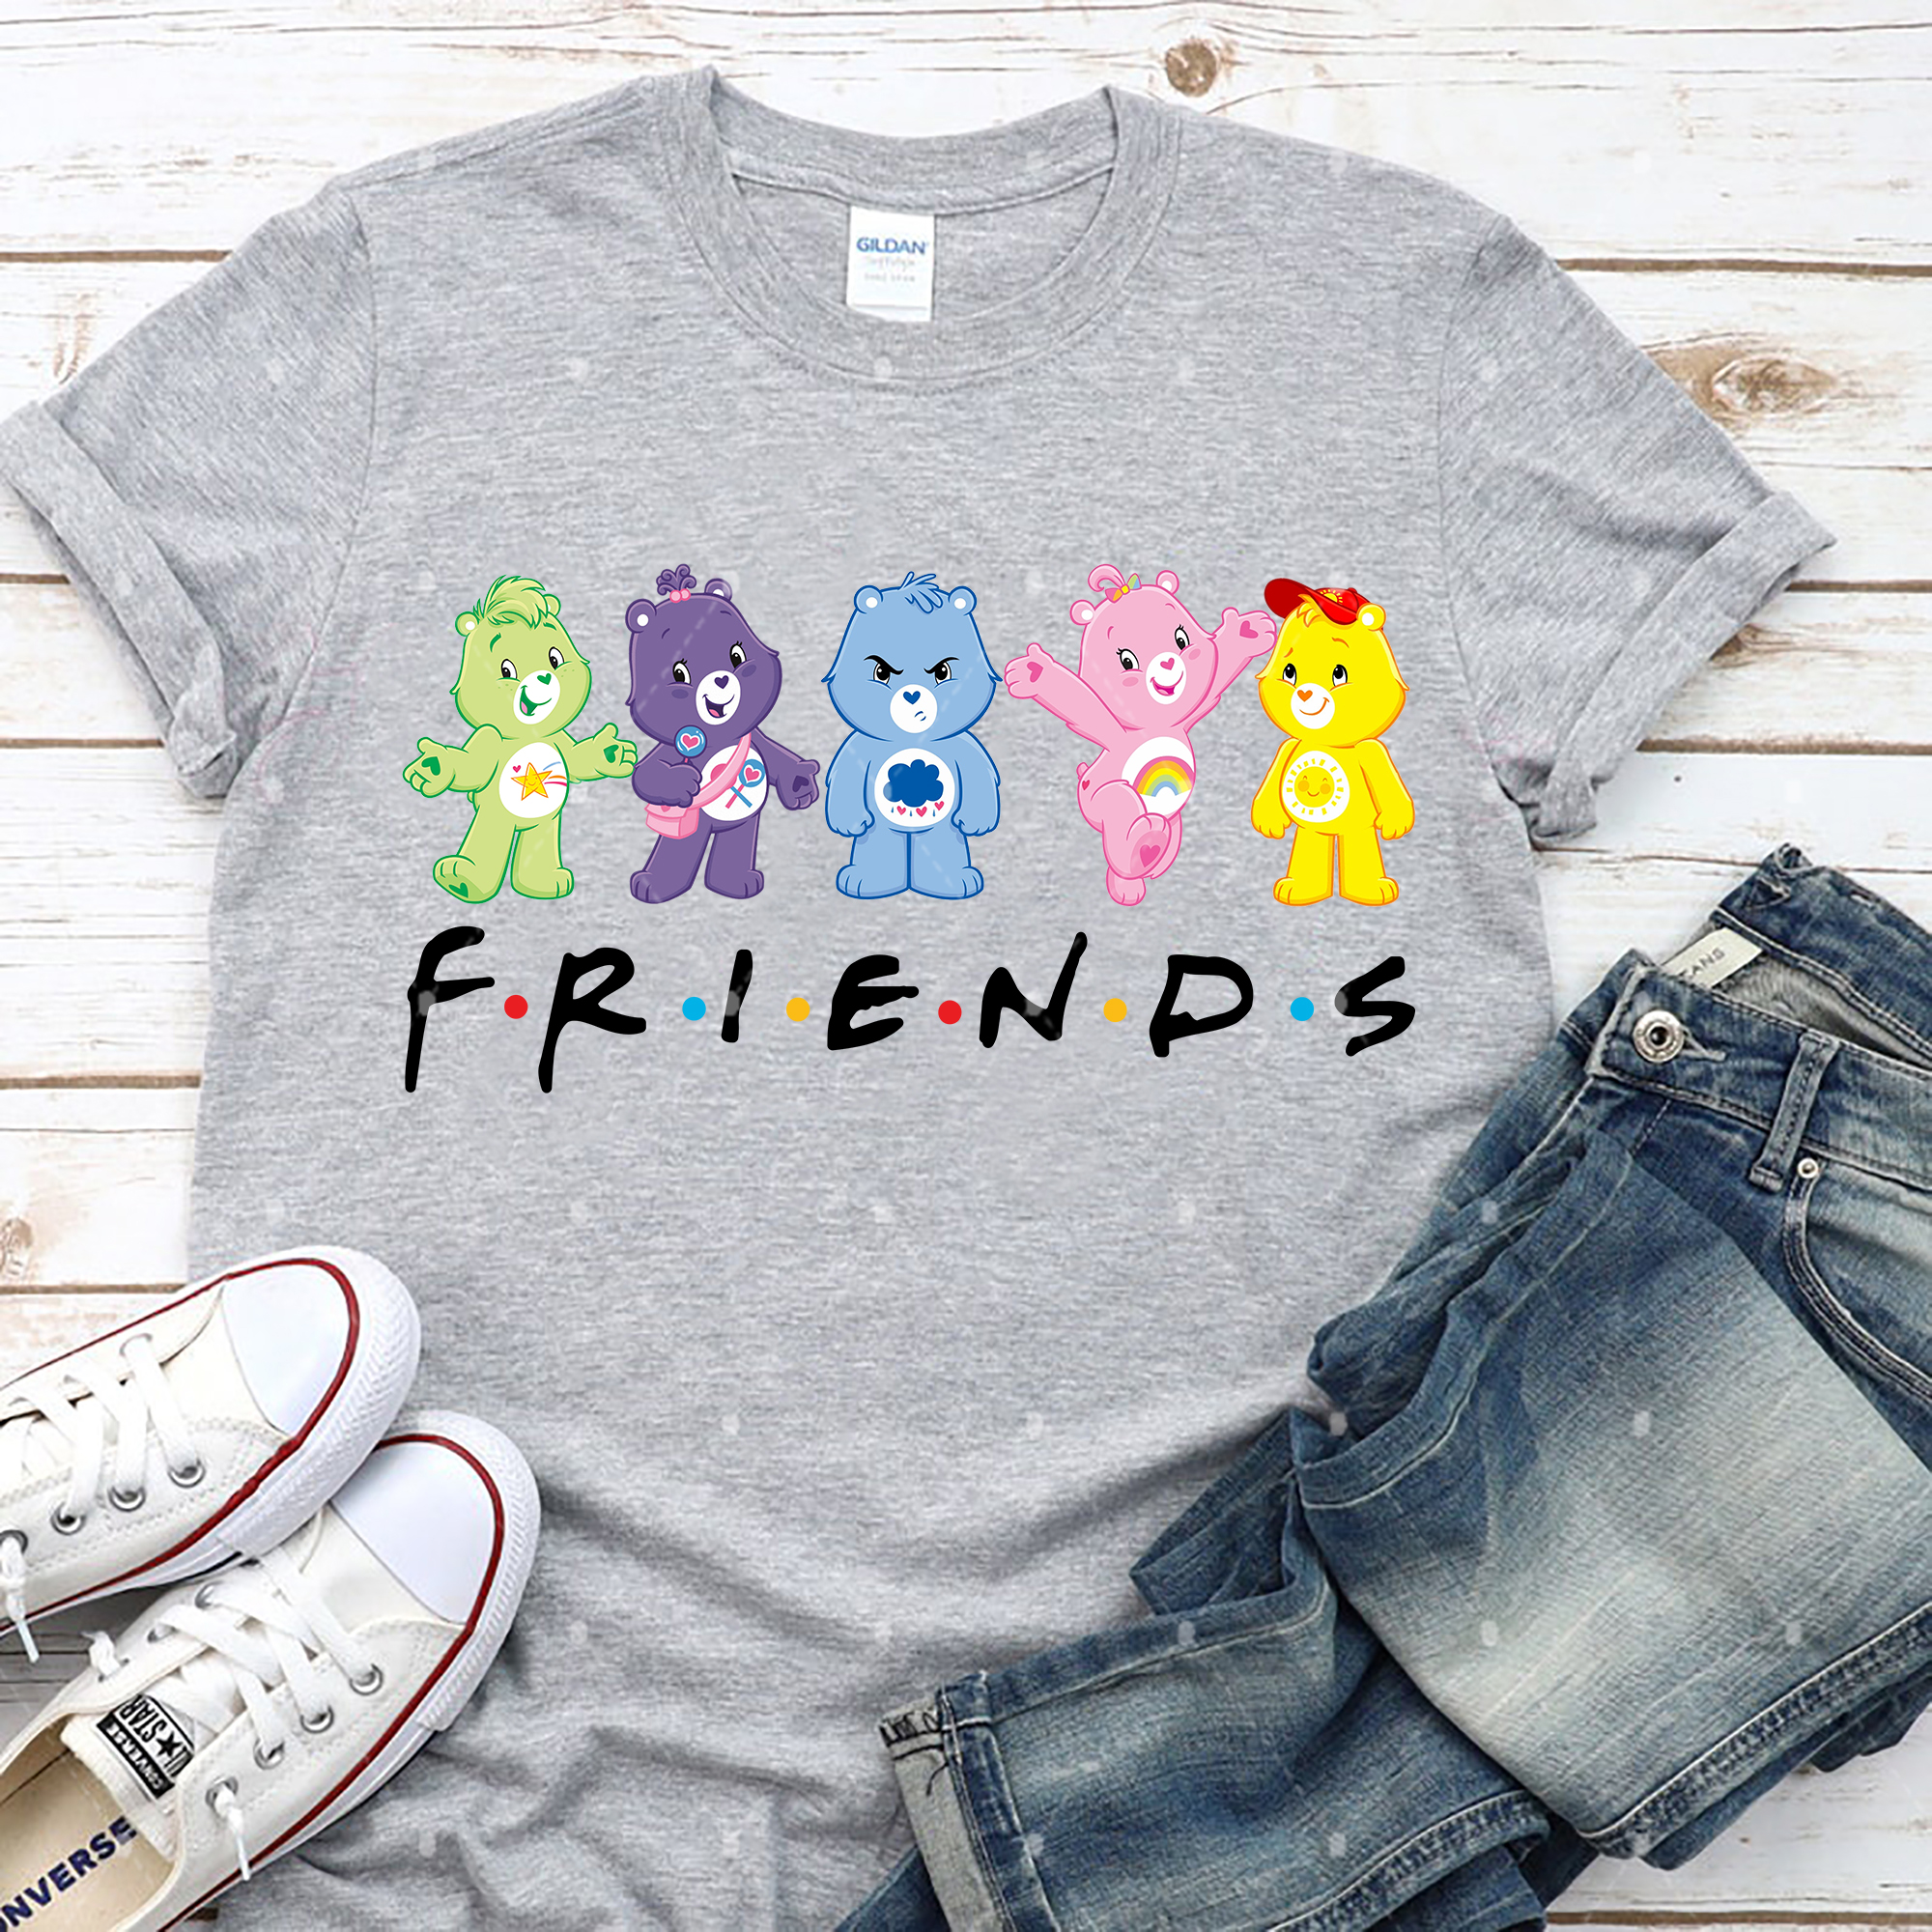 Care Bears Friends Shirt, 80s Series Cartoon Characters Shirt, Care Bears and Friends Matching Shirt, Friends Shirt